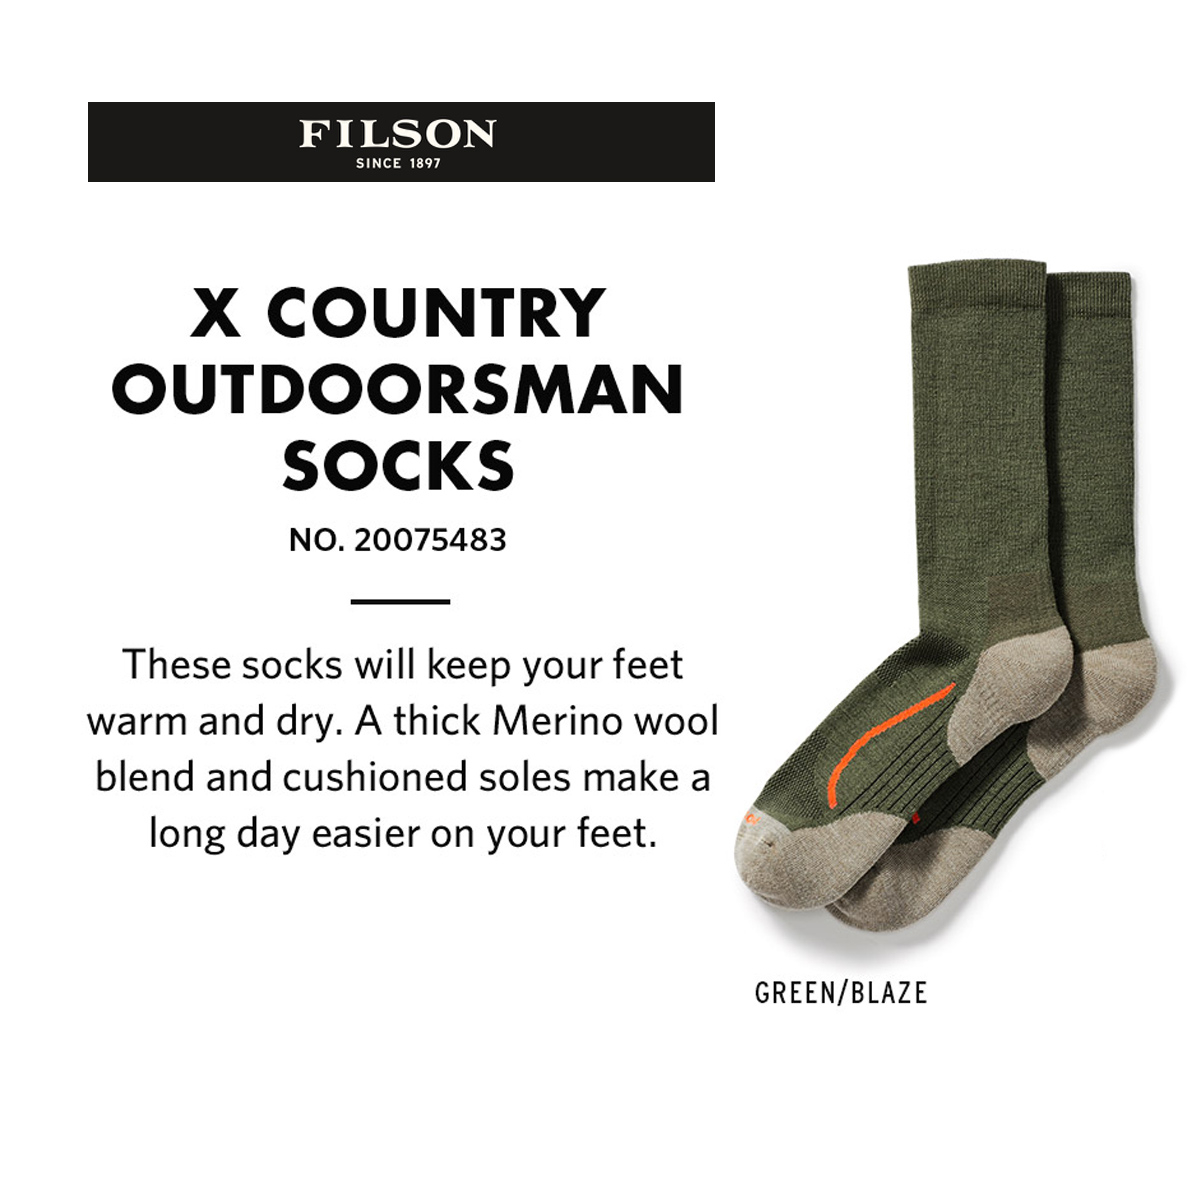 Filson X Country Outdoorsman Sock Green/Blaze, duurzame sok met een vochtafvoerende merinowolmix die je voeten droog en comfortabel houdt